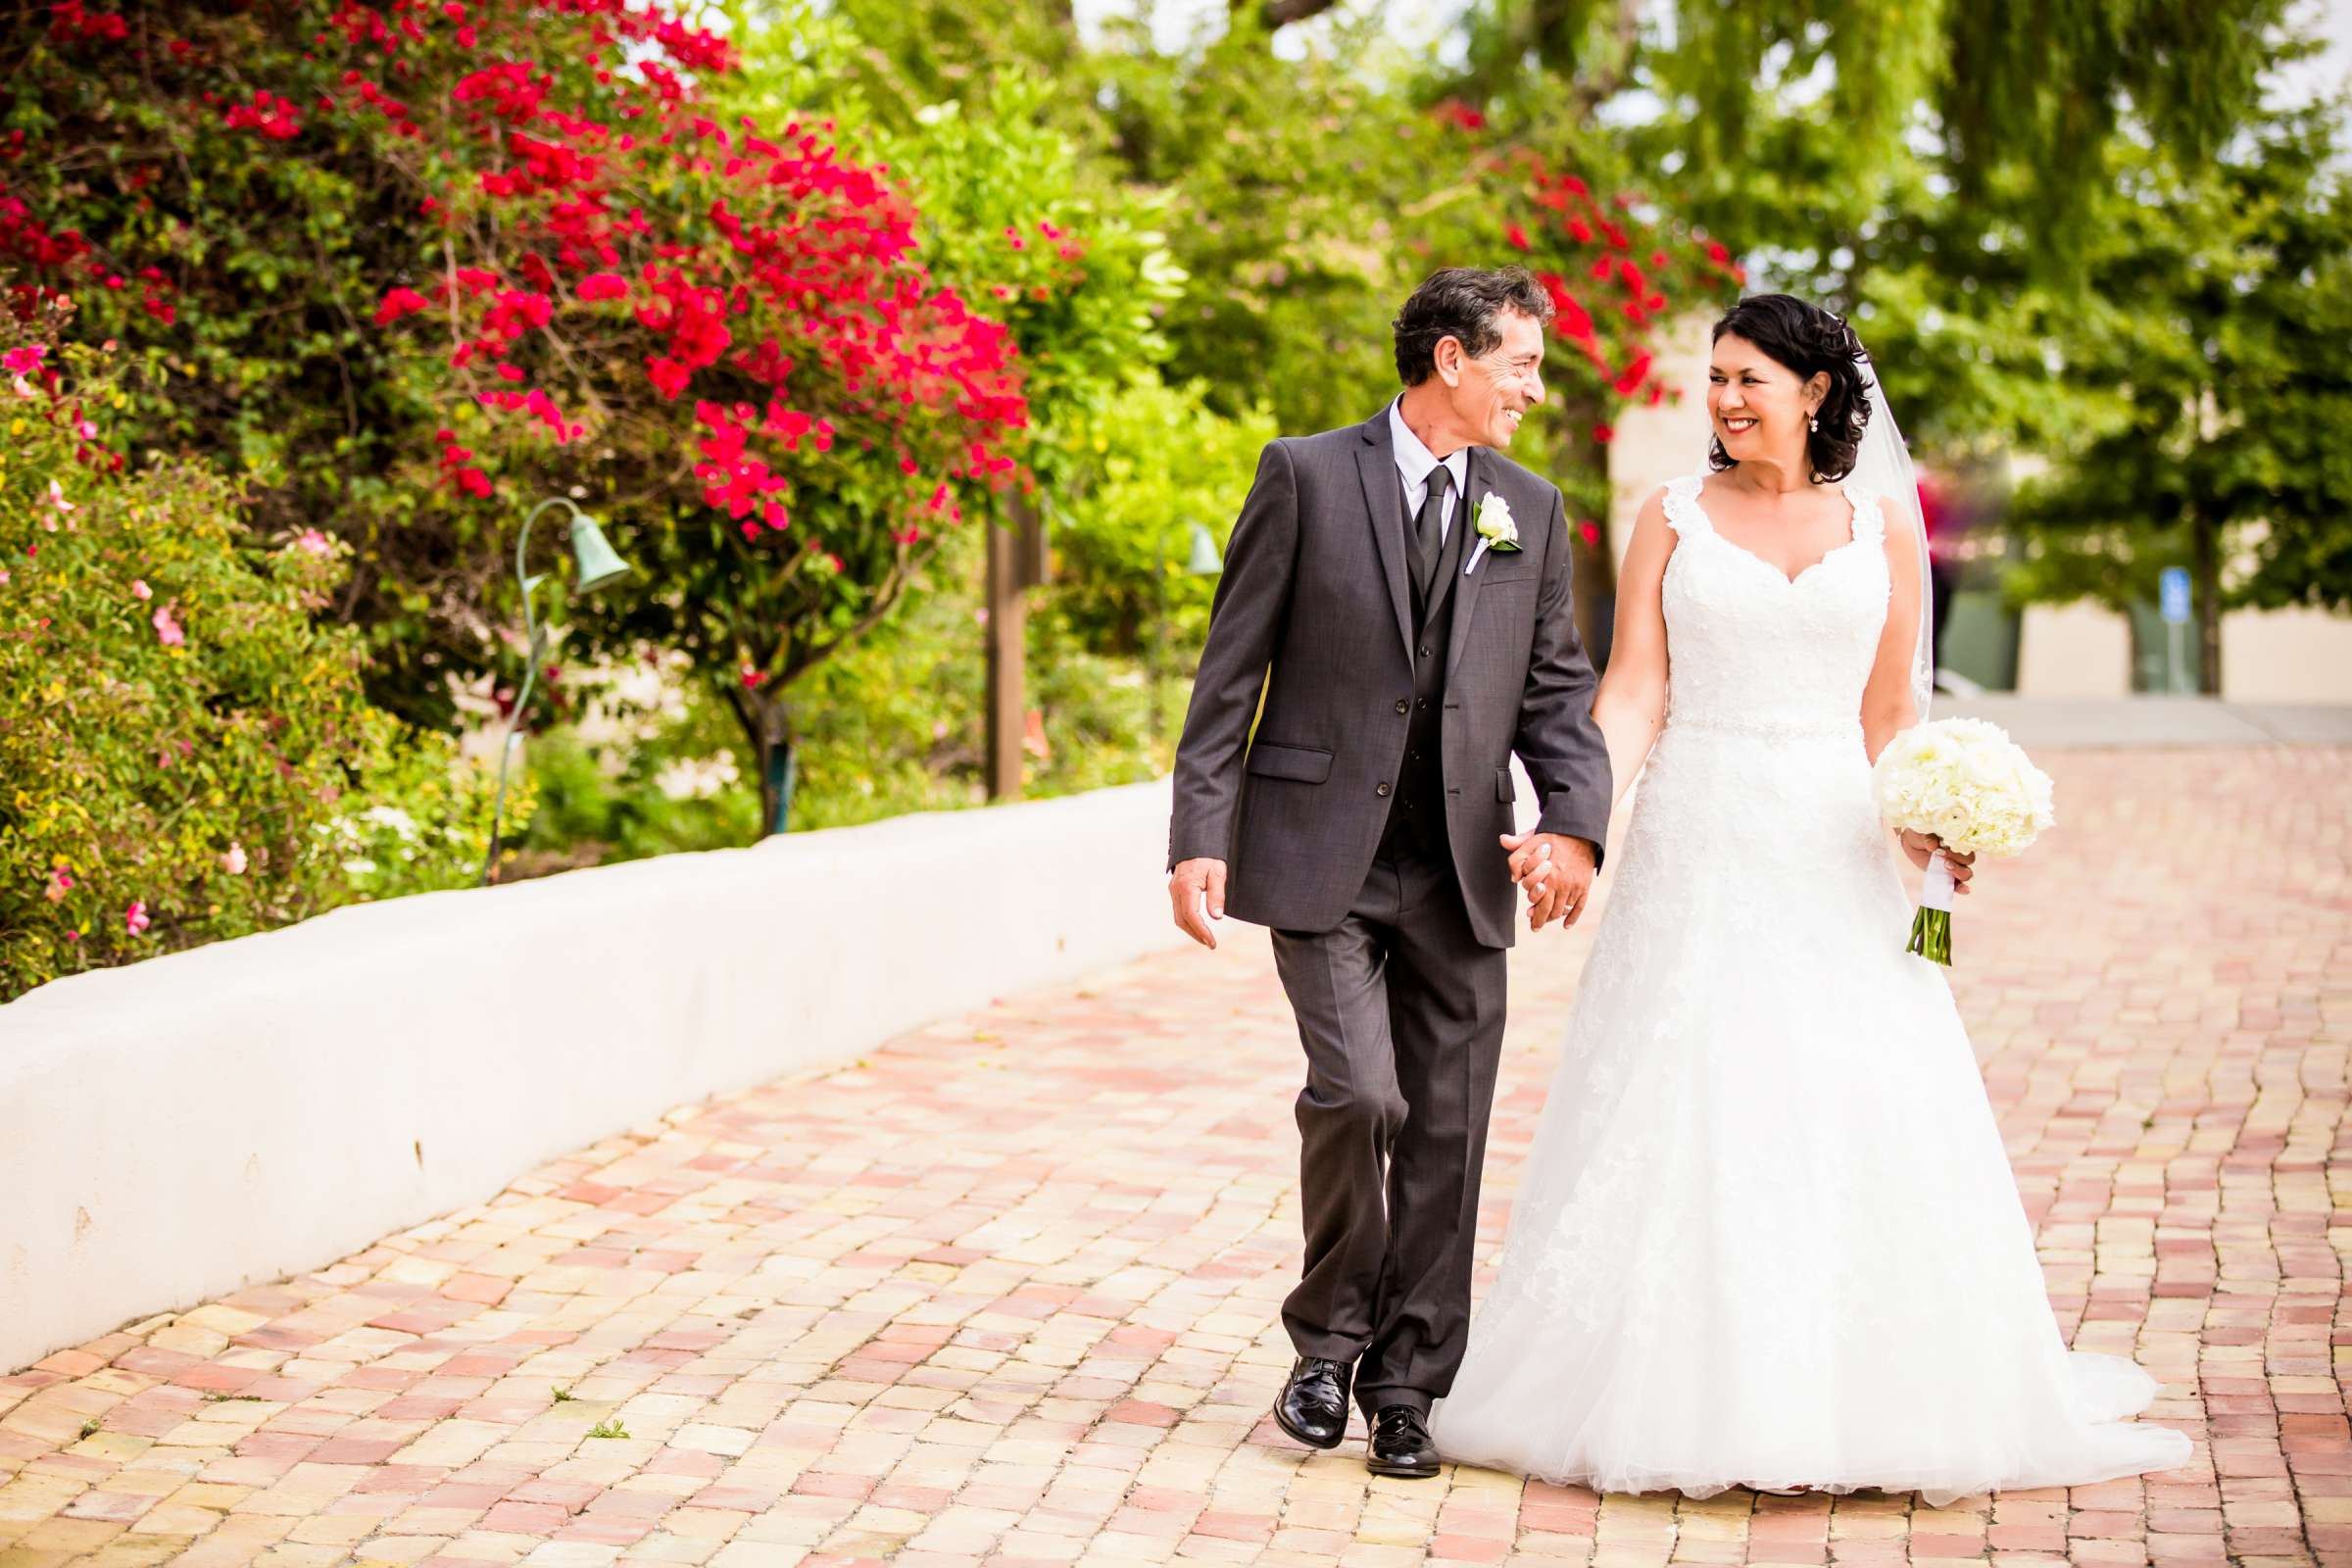 Rancho Buena Vista Adobe Wedding, Ellinor and Frank Wedding Photo #37 by True Photography